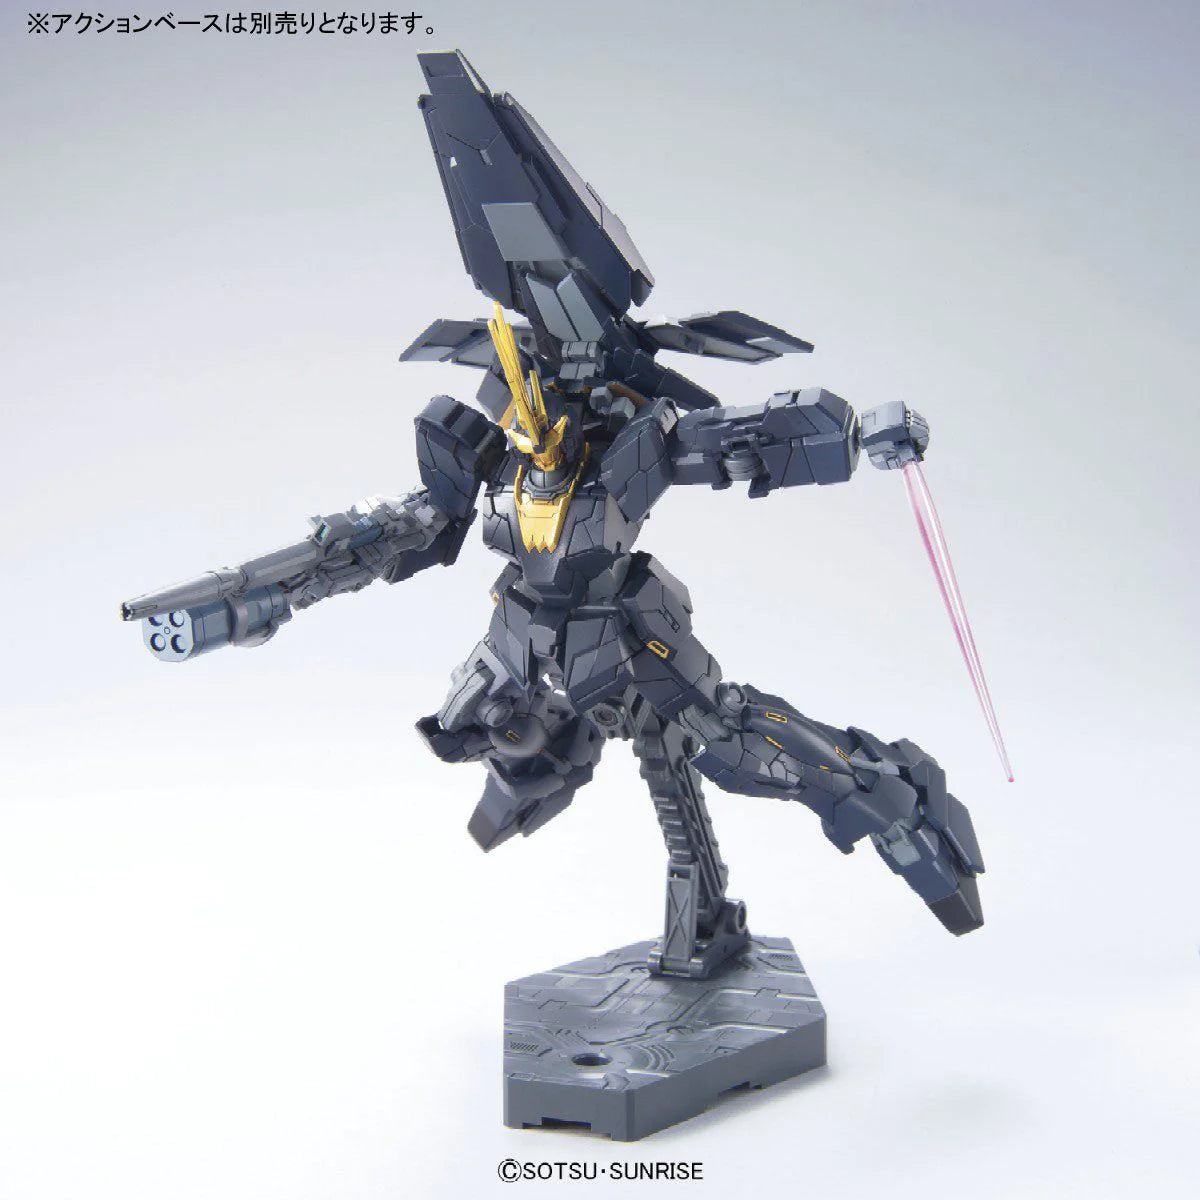 1/144 Hguc Unicorn Gundam 2 Banshee Norn Unicorn Mode